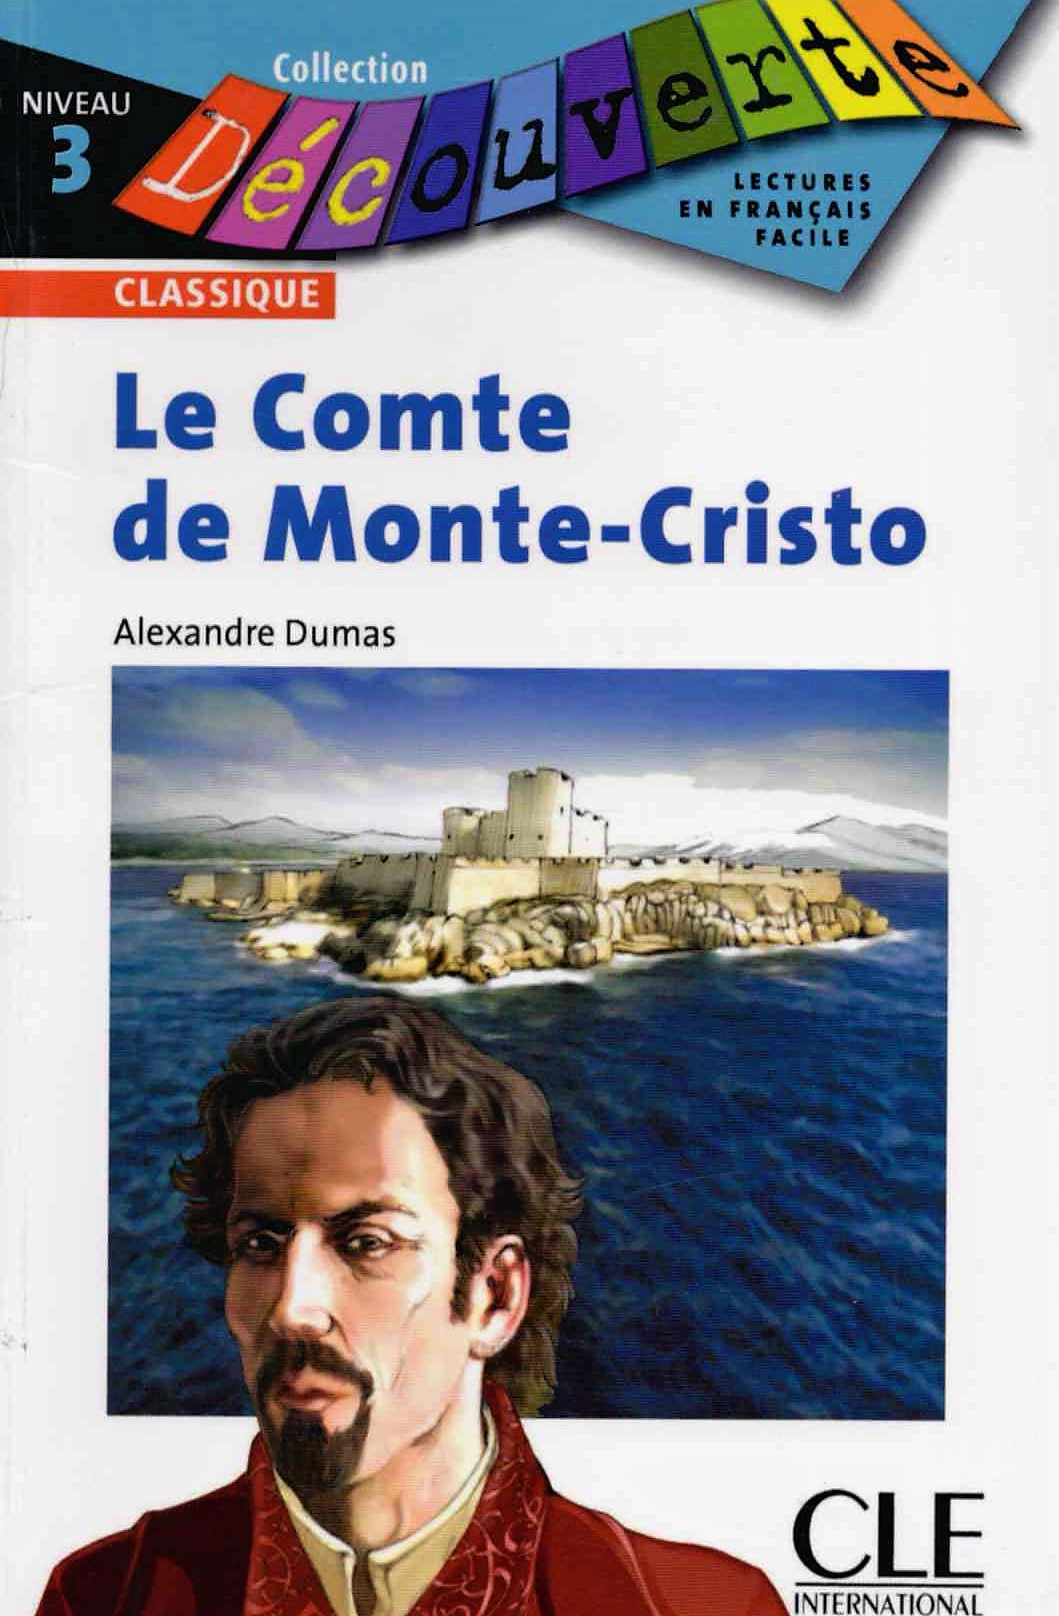 Decouverte: Le Comte de Monte-Cristo